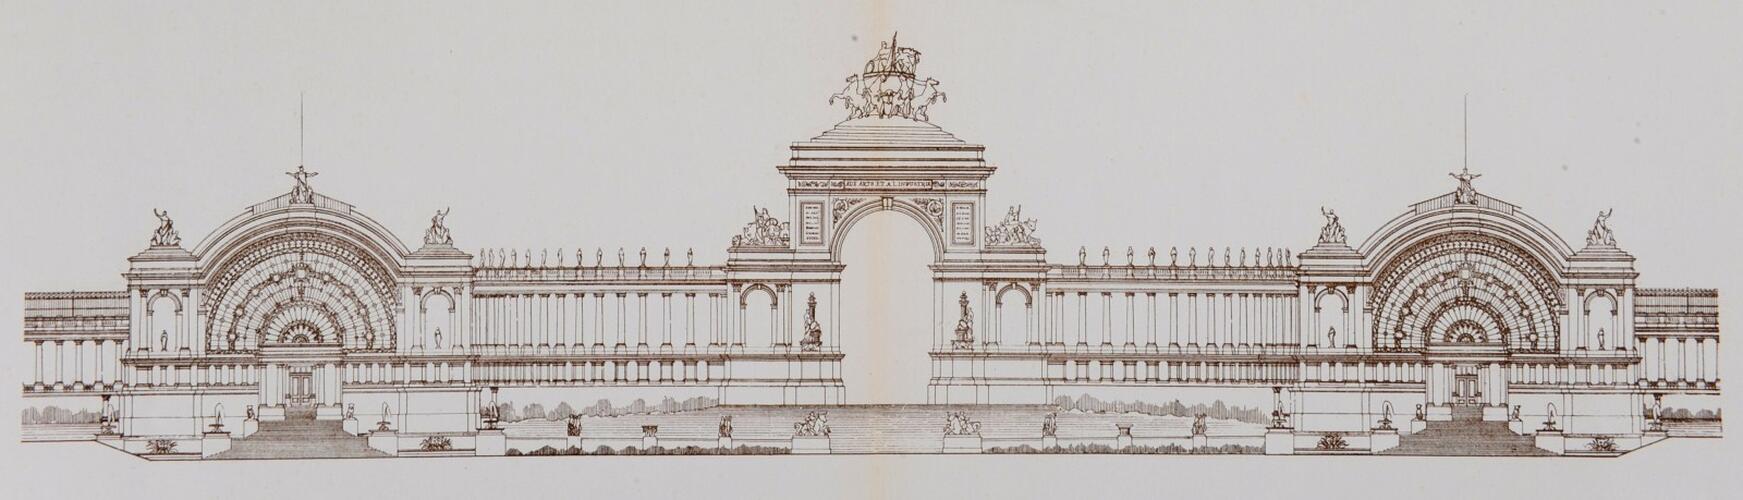 Ontwerp van een paleis voor de Nationale Tentoonstelling van 1880, tekening van Gédéon Bordiau, opstand in de richting van de stad, [i]L’Émulation[/i], 1881, pl. 3-4